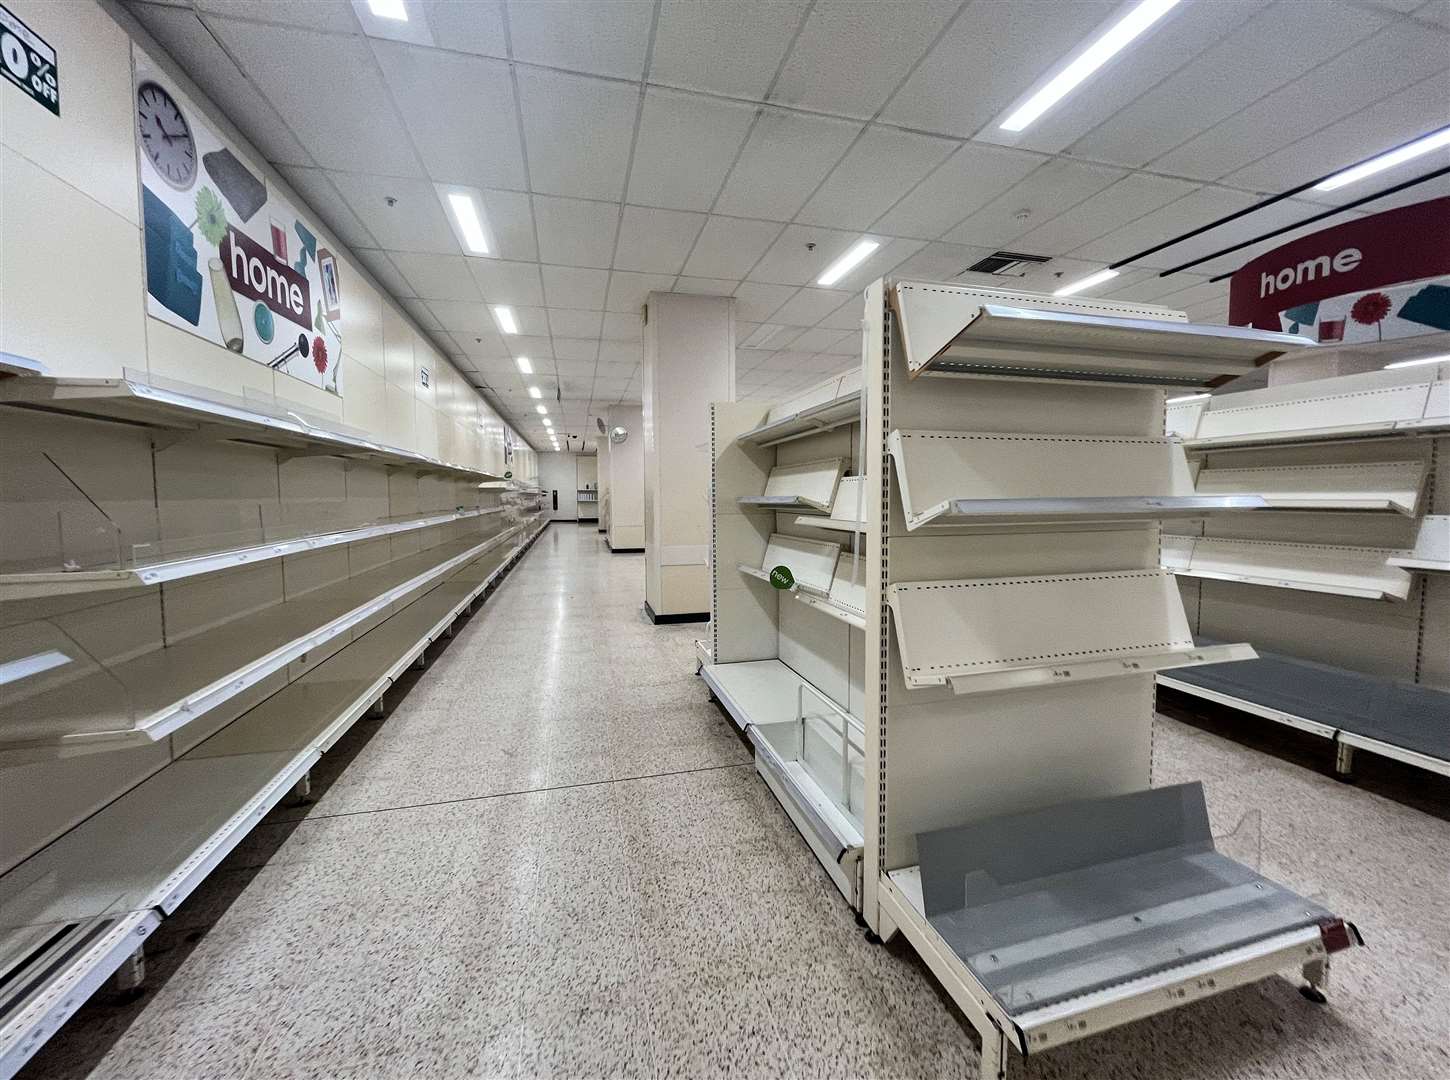 Empty shelves inside Wilko in Ashford